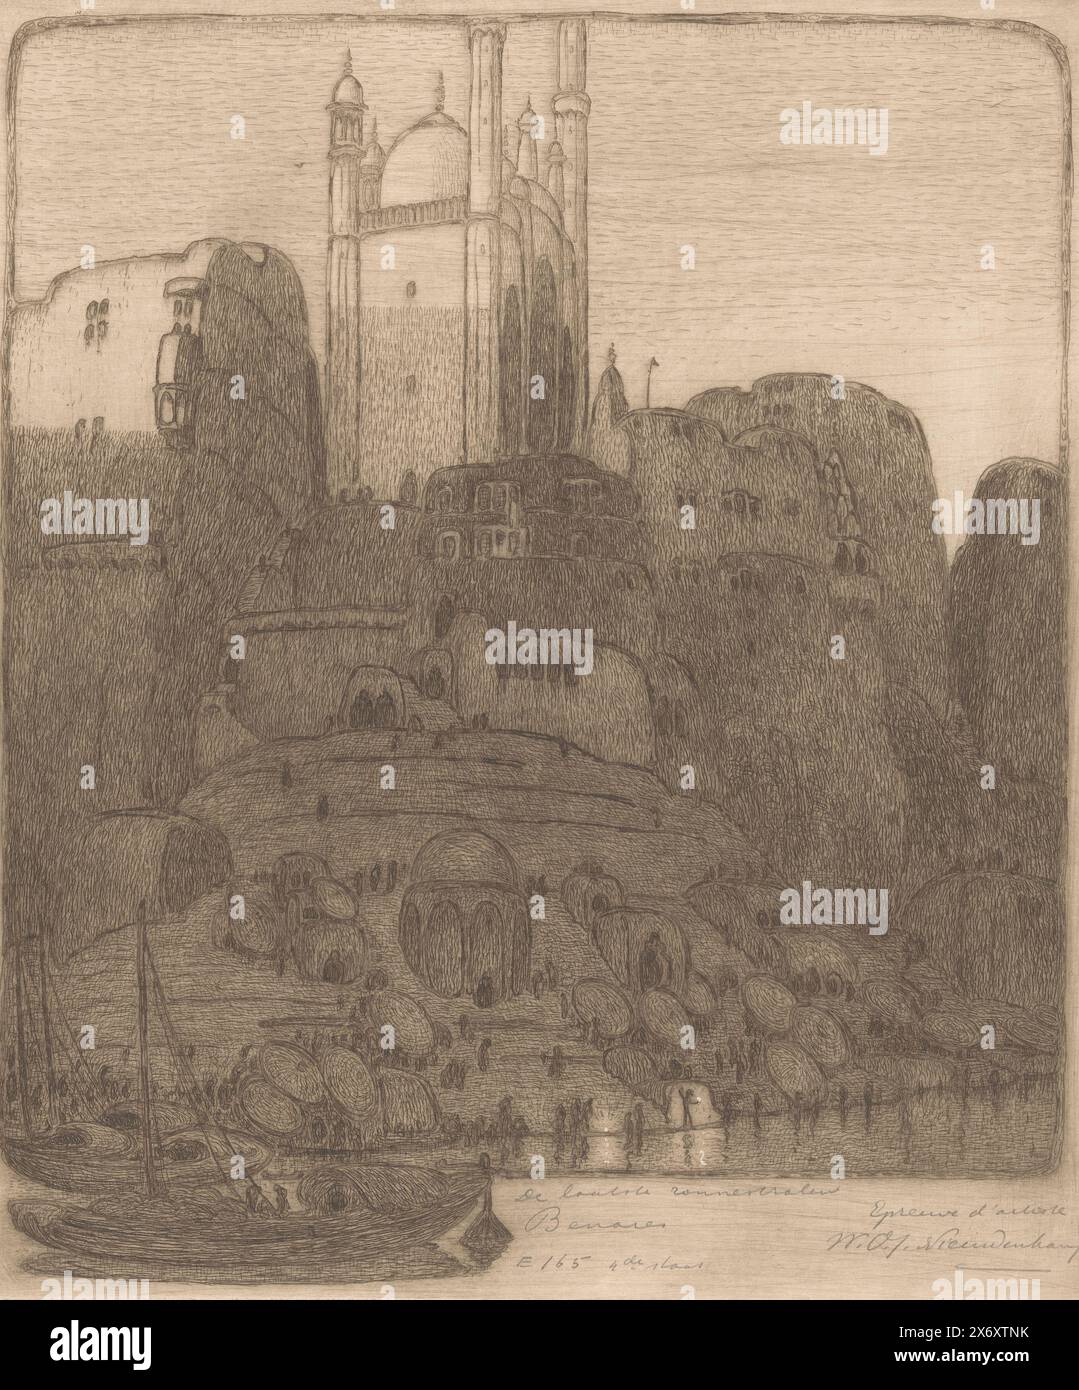 Les derniers rayons du soleil, Benares (titre original sur objet), la rive du Gange à Benares au coucher du soleil. Quelques bateaux dans l'eau. Marches en pierre et terrasses sur le rivage. Au sommet, la mosquée Aurangzeb, également connue sous le nom de mosquée Alamgir., imprimeur, imprimeur : Wijnand Otto Jan Nieuwenkamp, (signé par l'artiste), 15-mai-1915 et/ou octobre-1915, papier, gravure, hauteur, 369 mm × largeur, 317 mm Banque D'Images